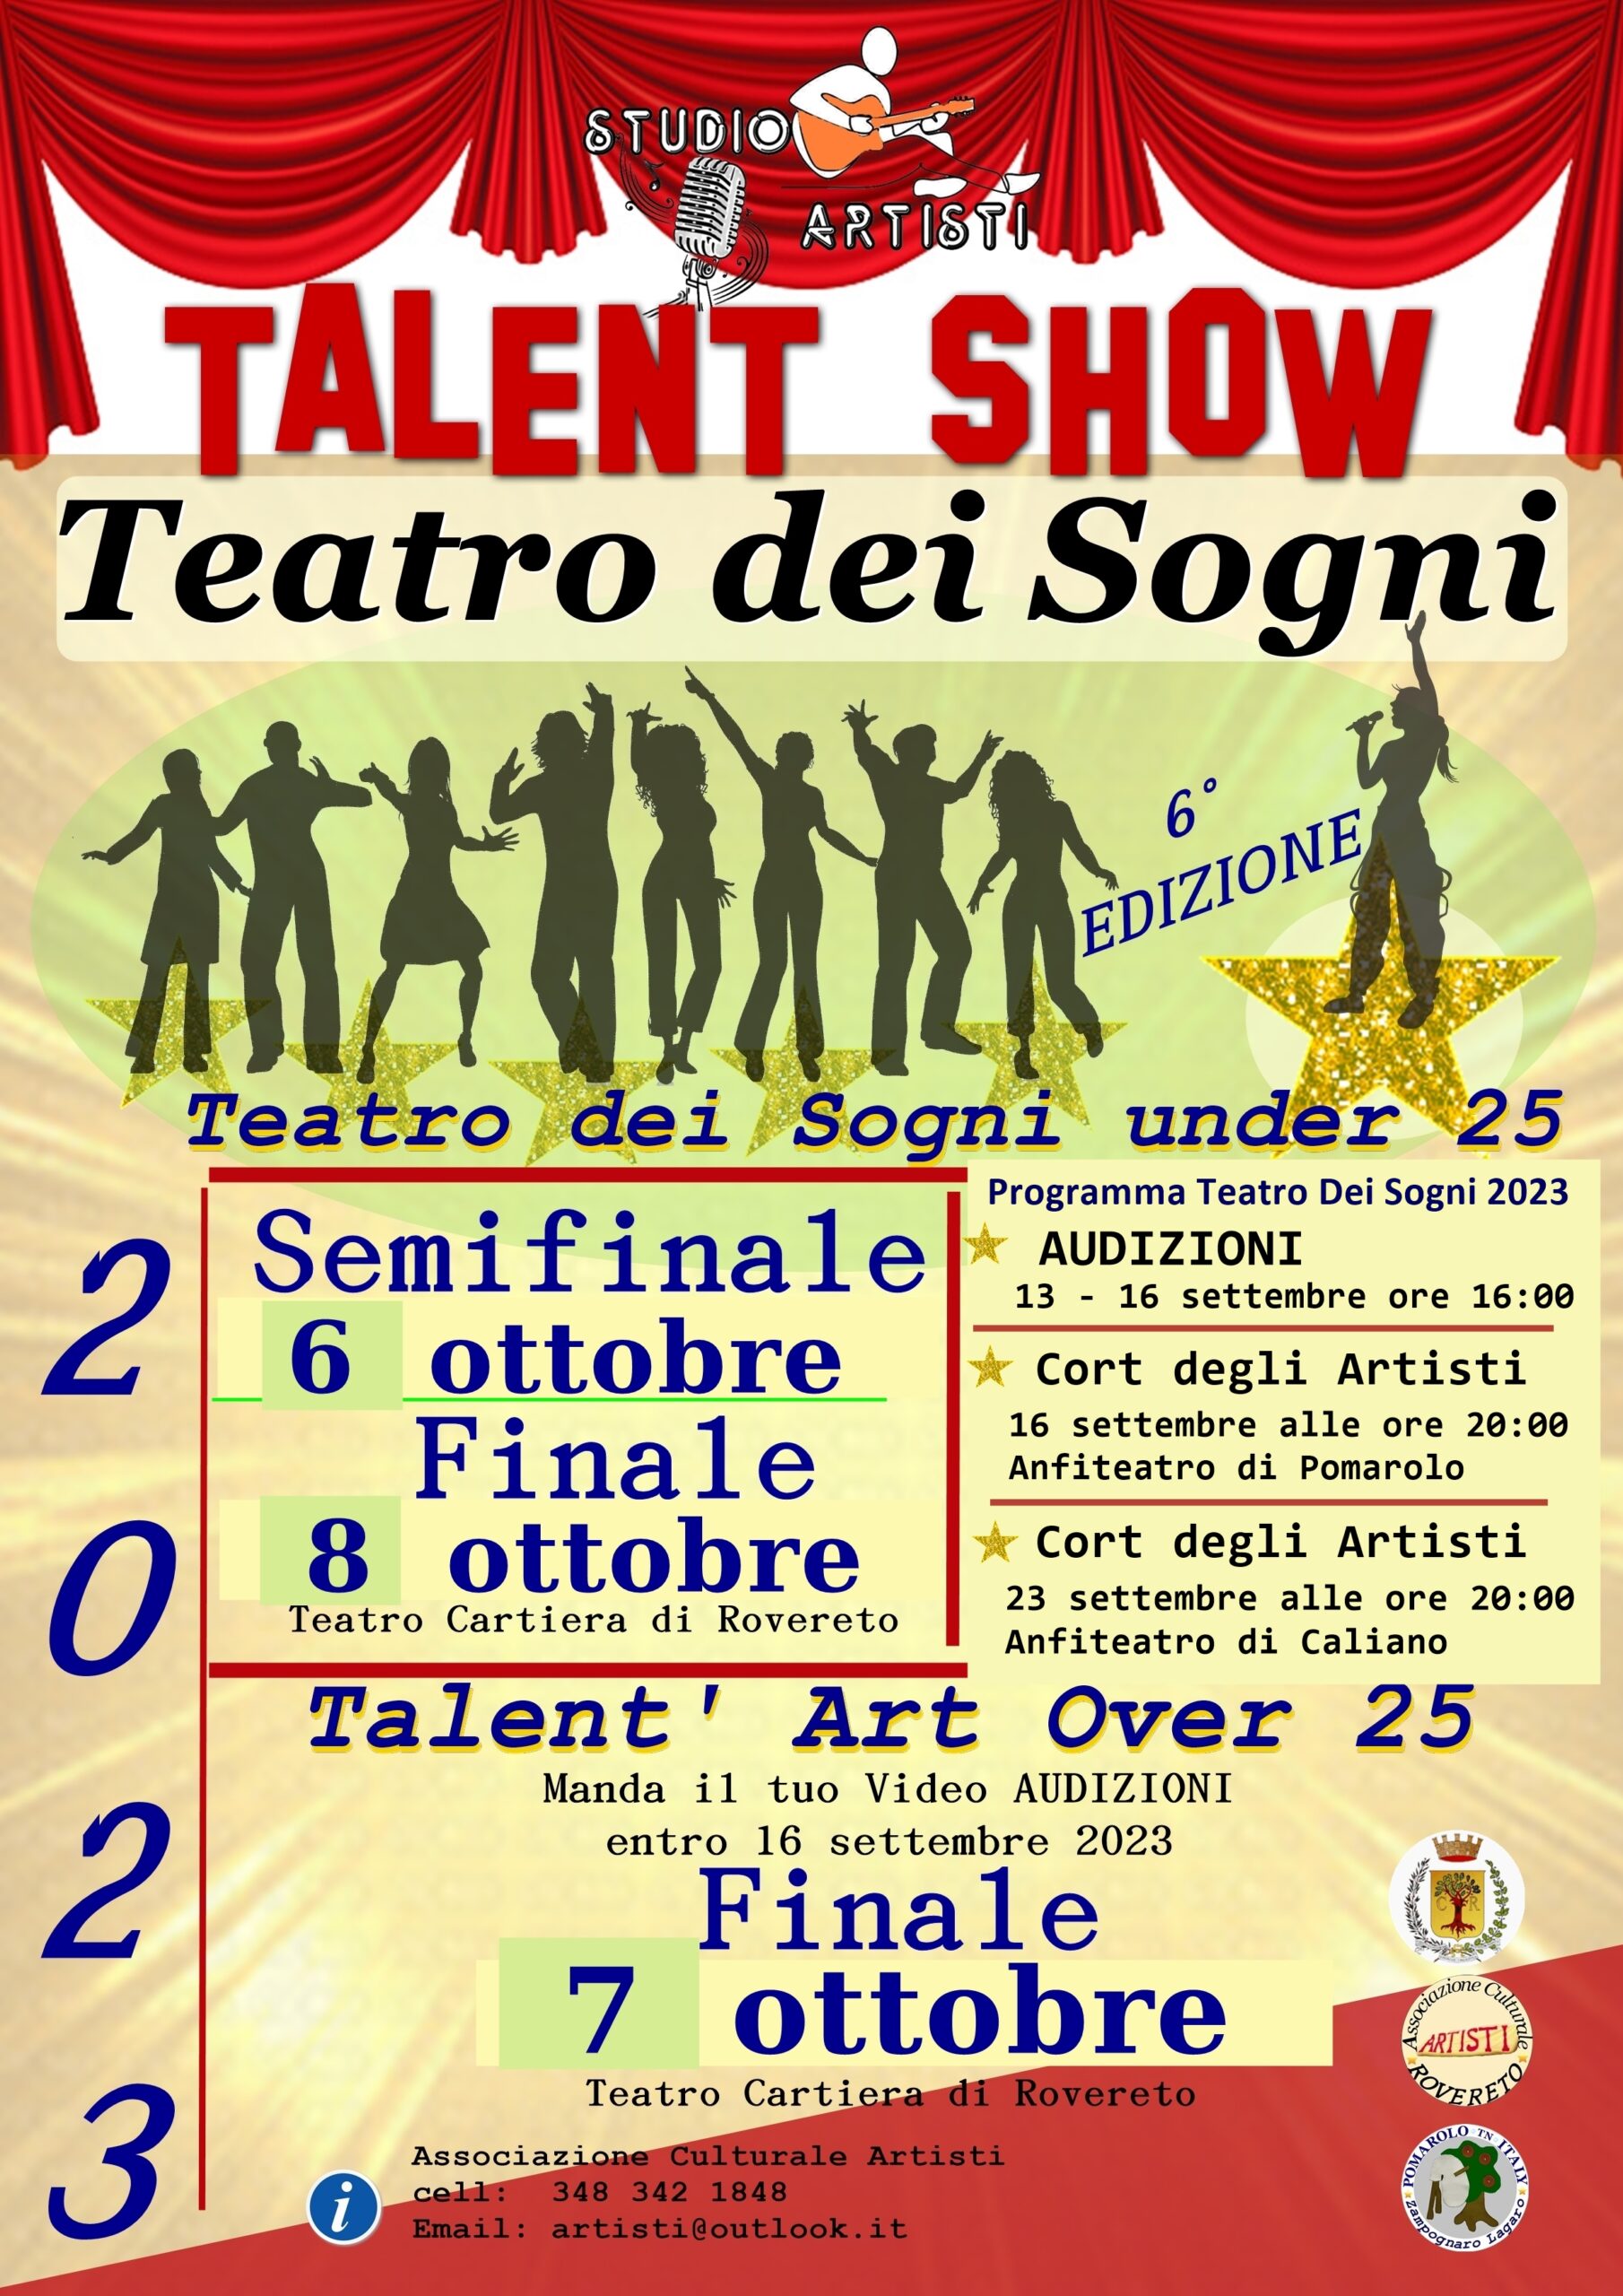 Talent Show “Teatro dei Sogni” 2023